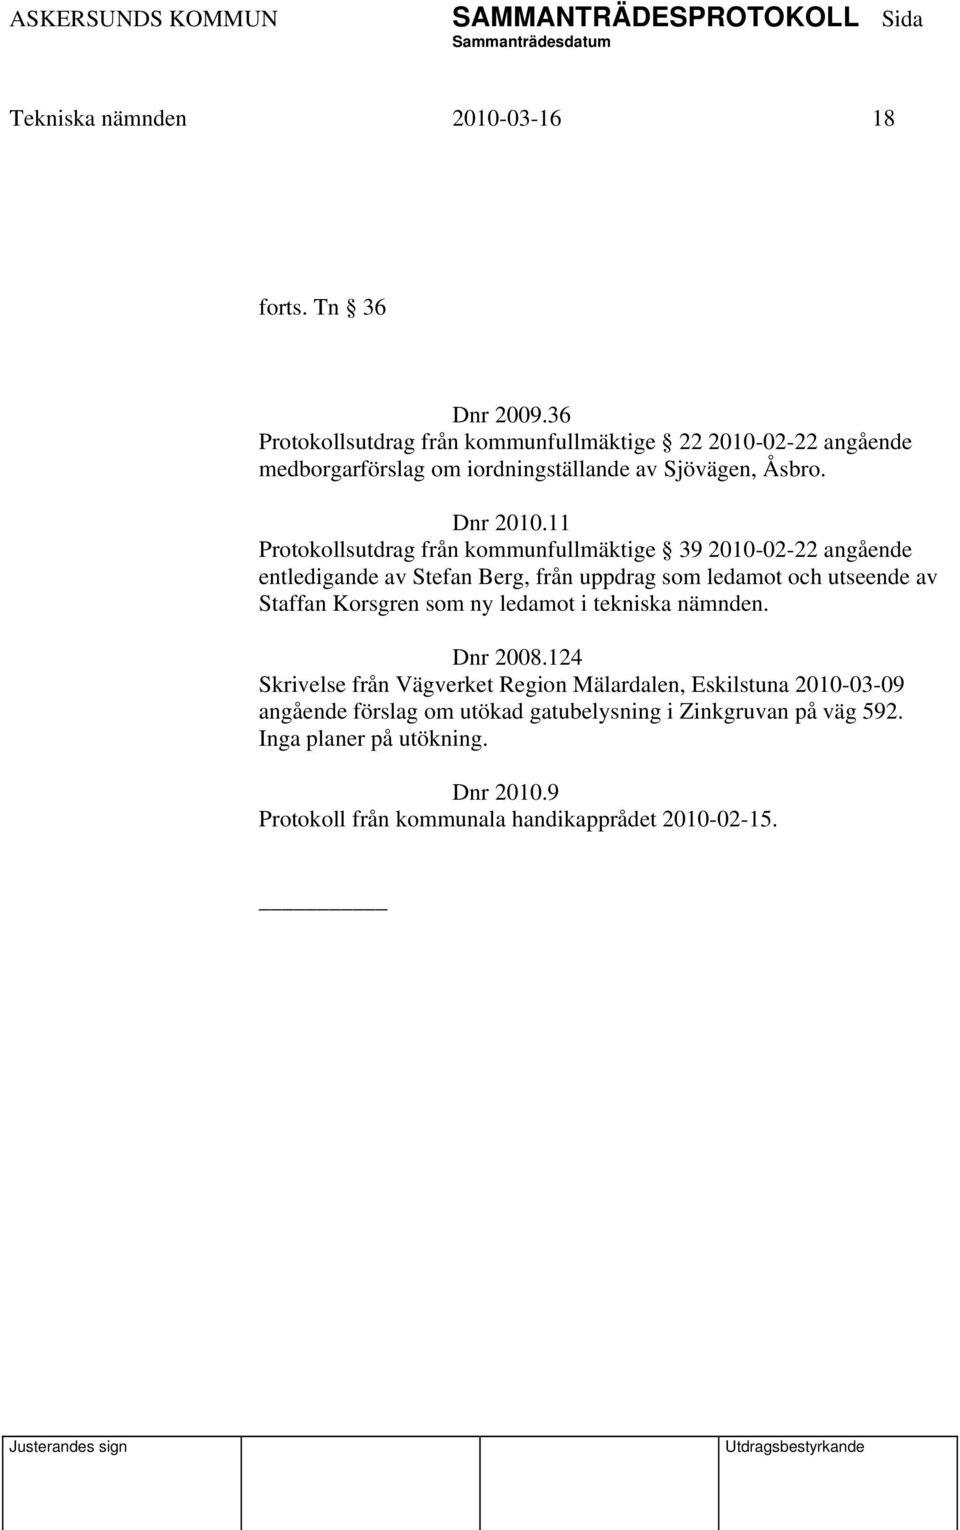 11 Protokollsutdrag från kommunfullmäktige 39 2010-02-22 angående entledigande av Stefan Berg, från uppdrag som ledamot och utseende av Staffan